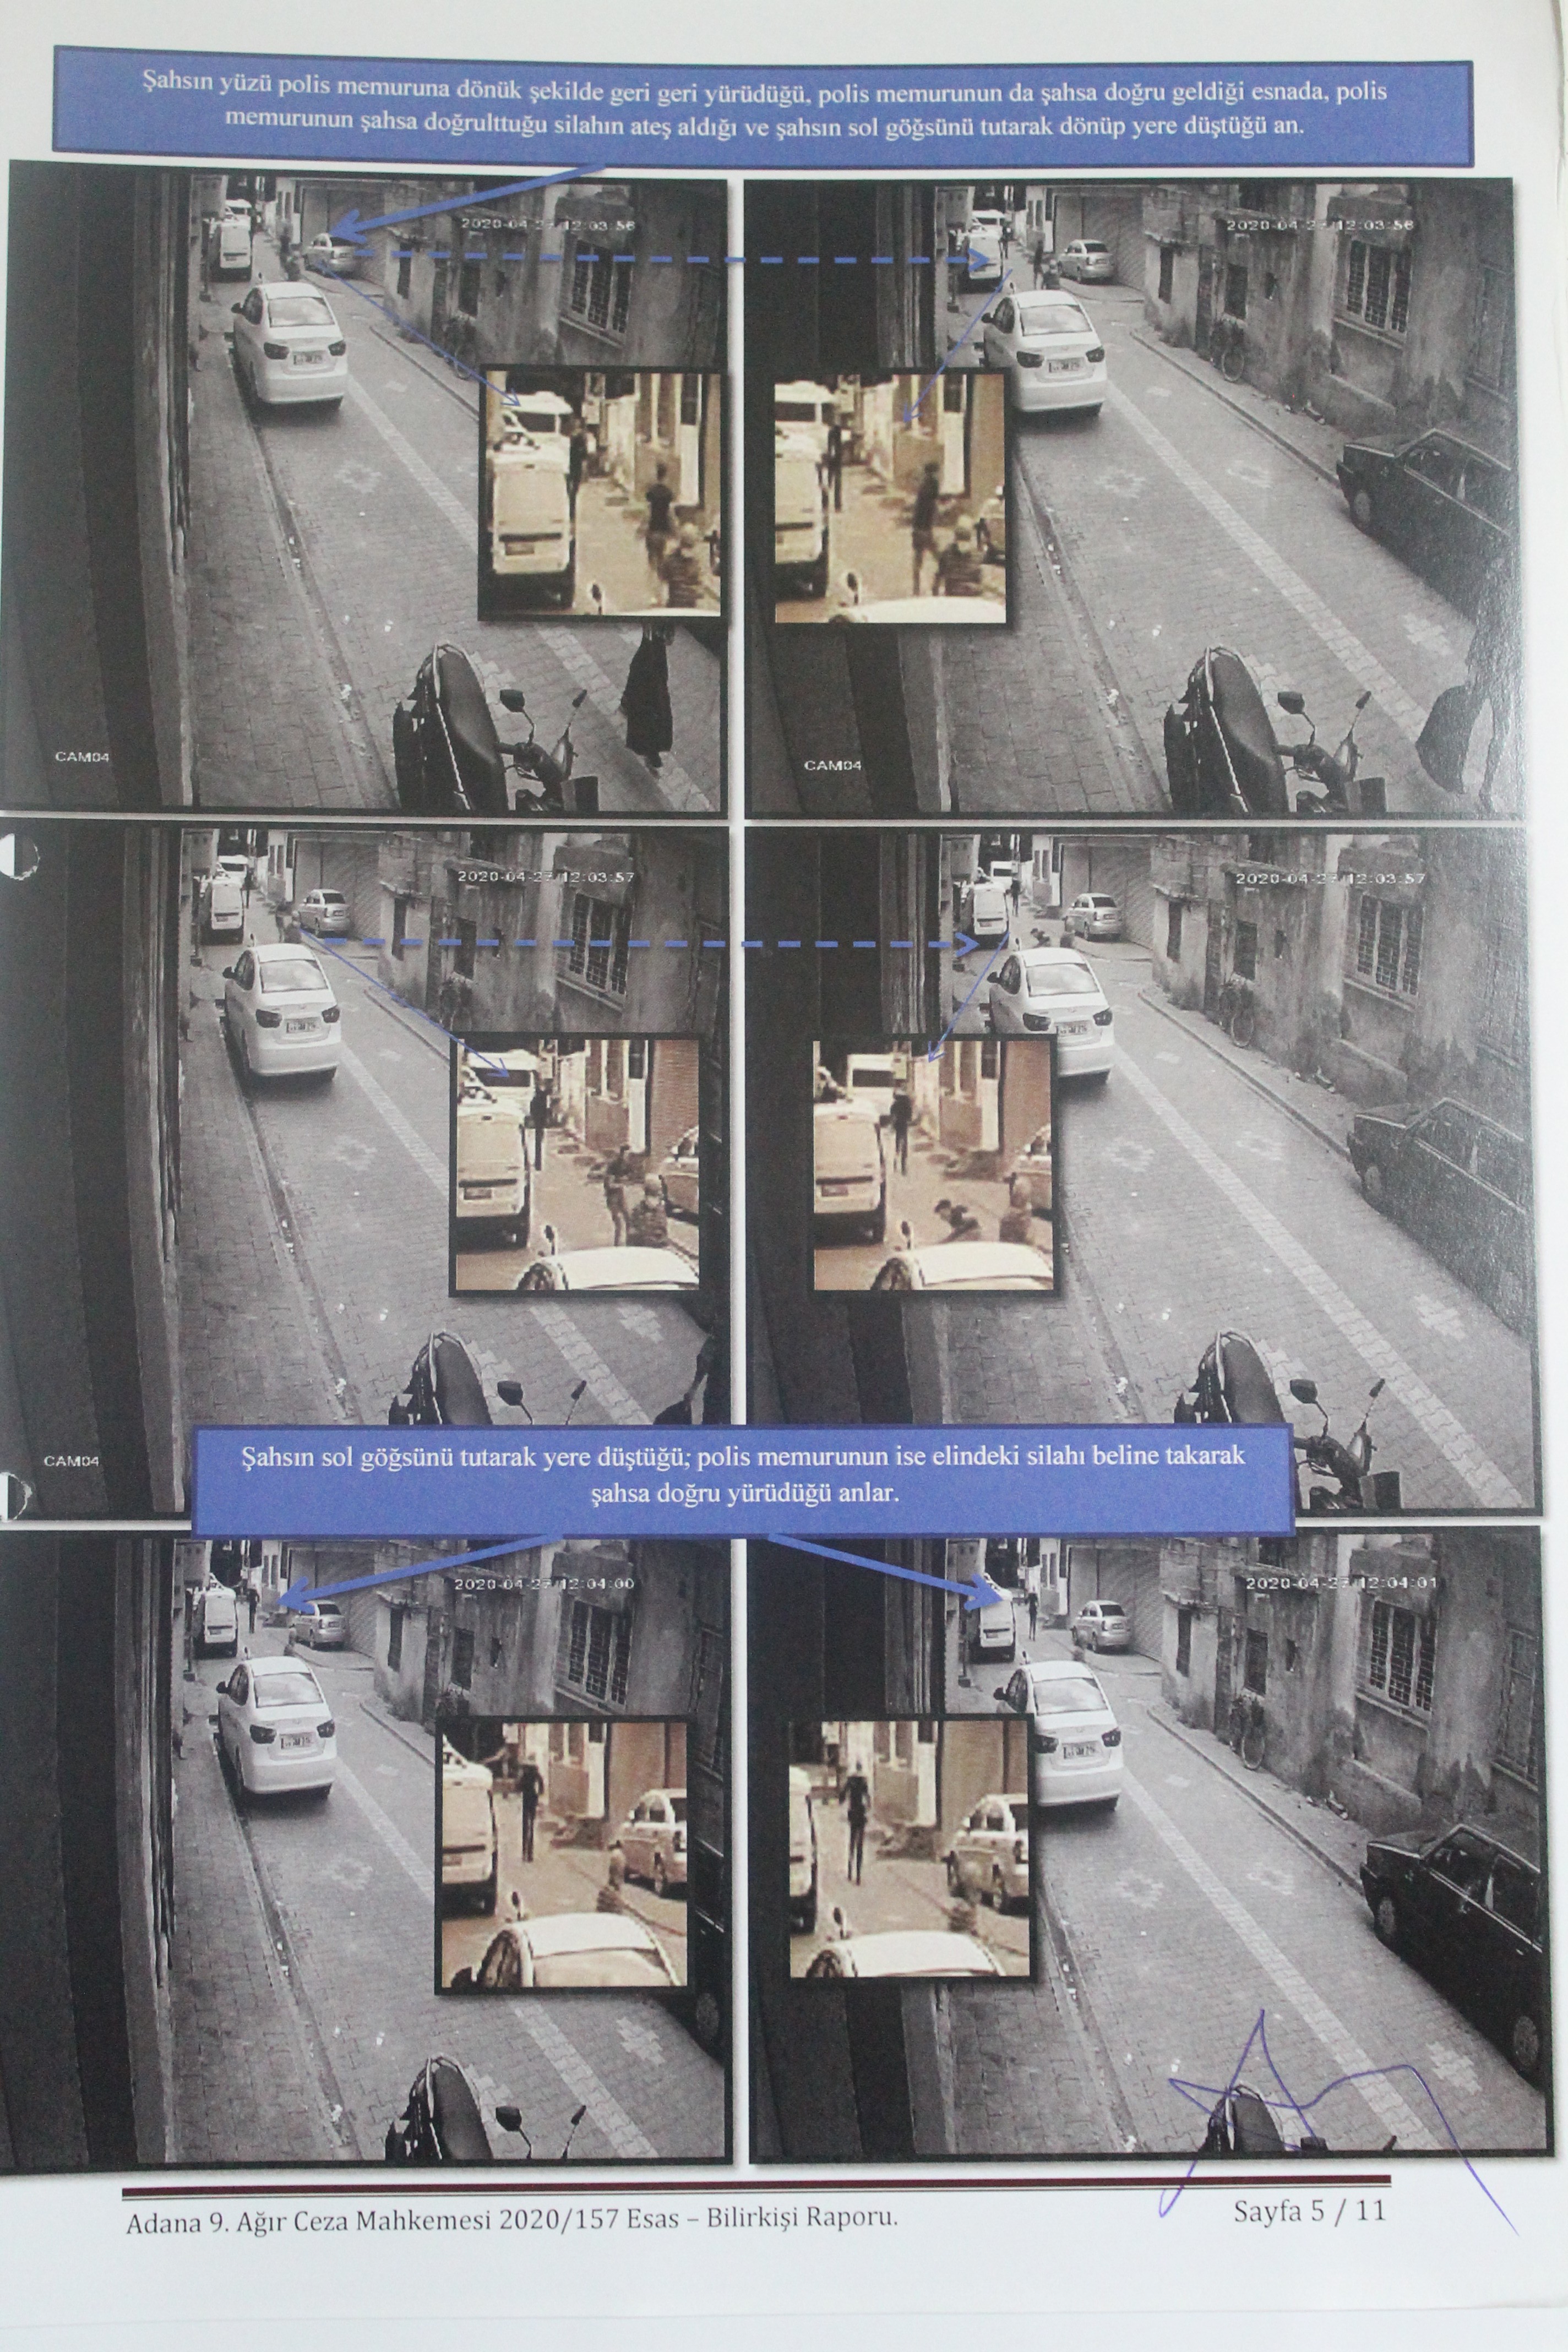 Ali El Hemdan'ın vurulduğu ana dair görüntüler